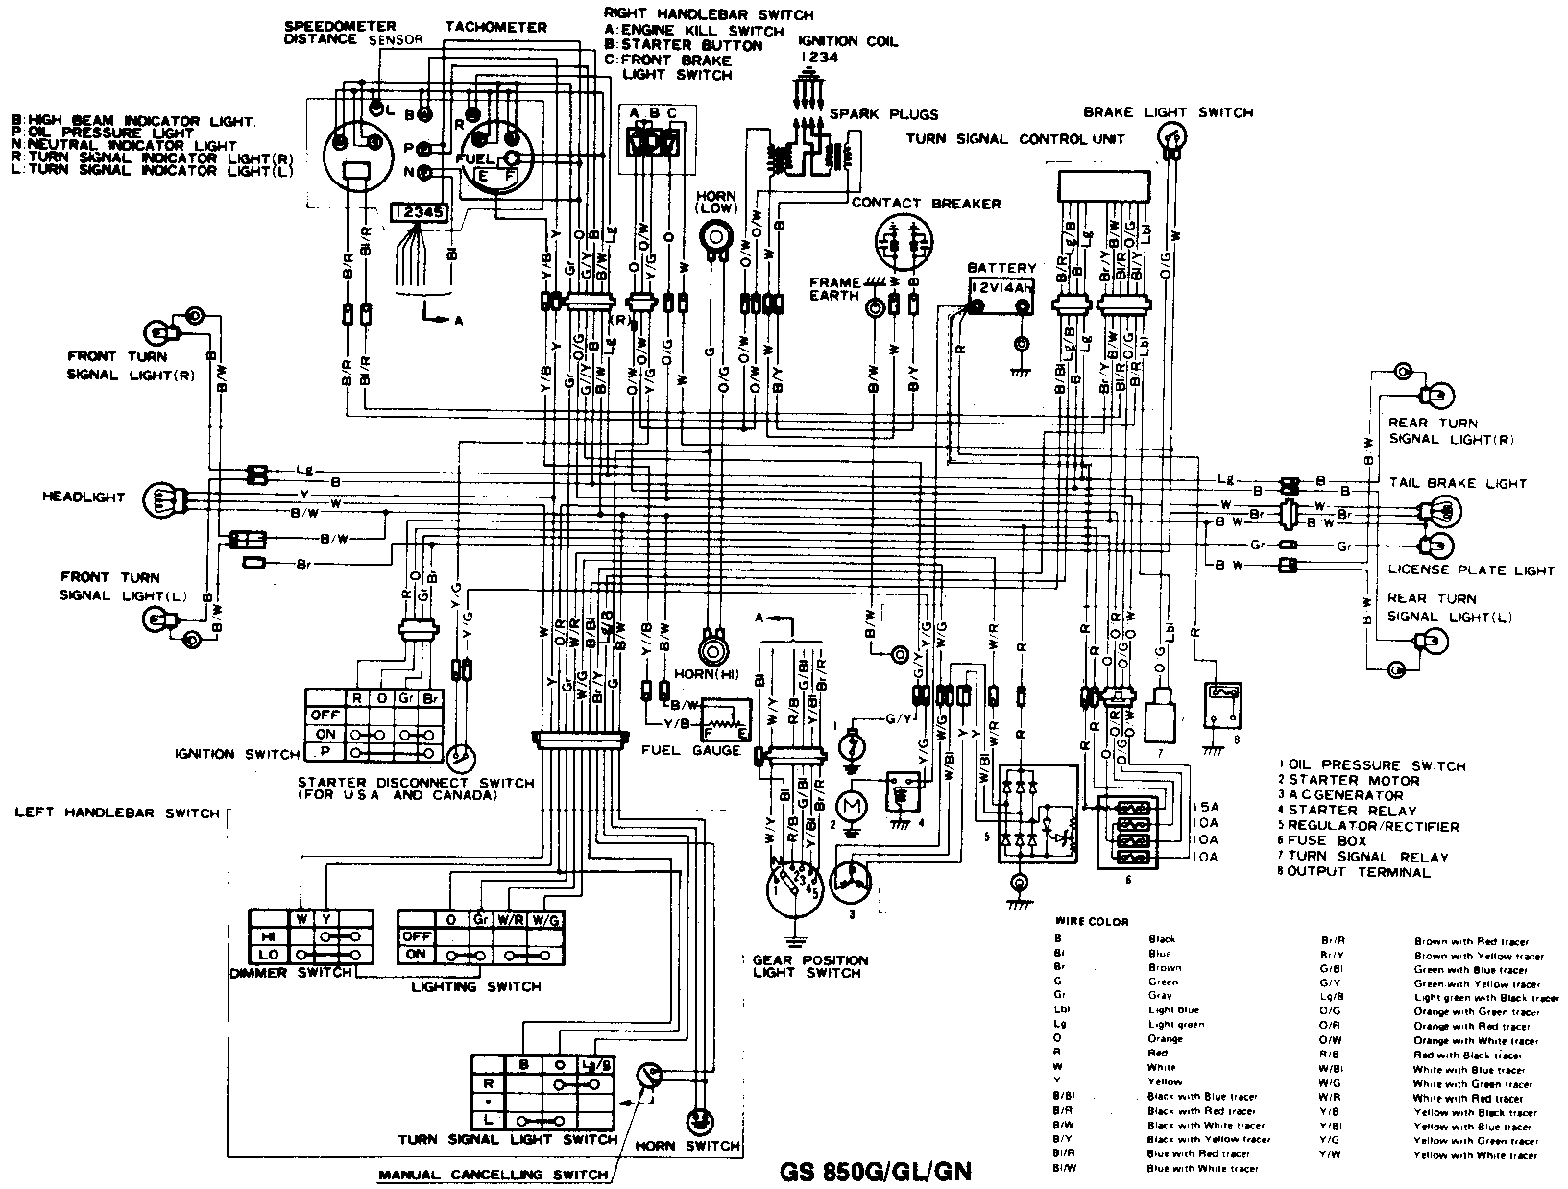 1981 Suzuki Gs750 Wiring Diagram from smokeriders.com